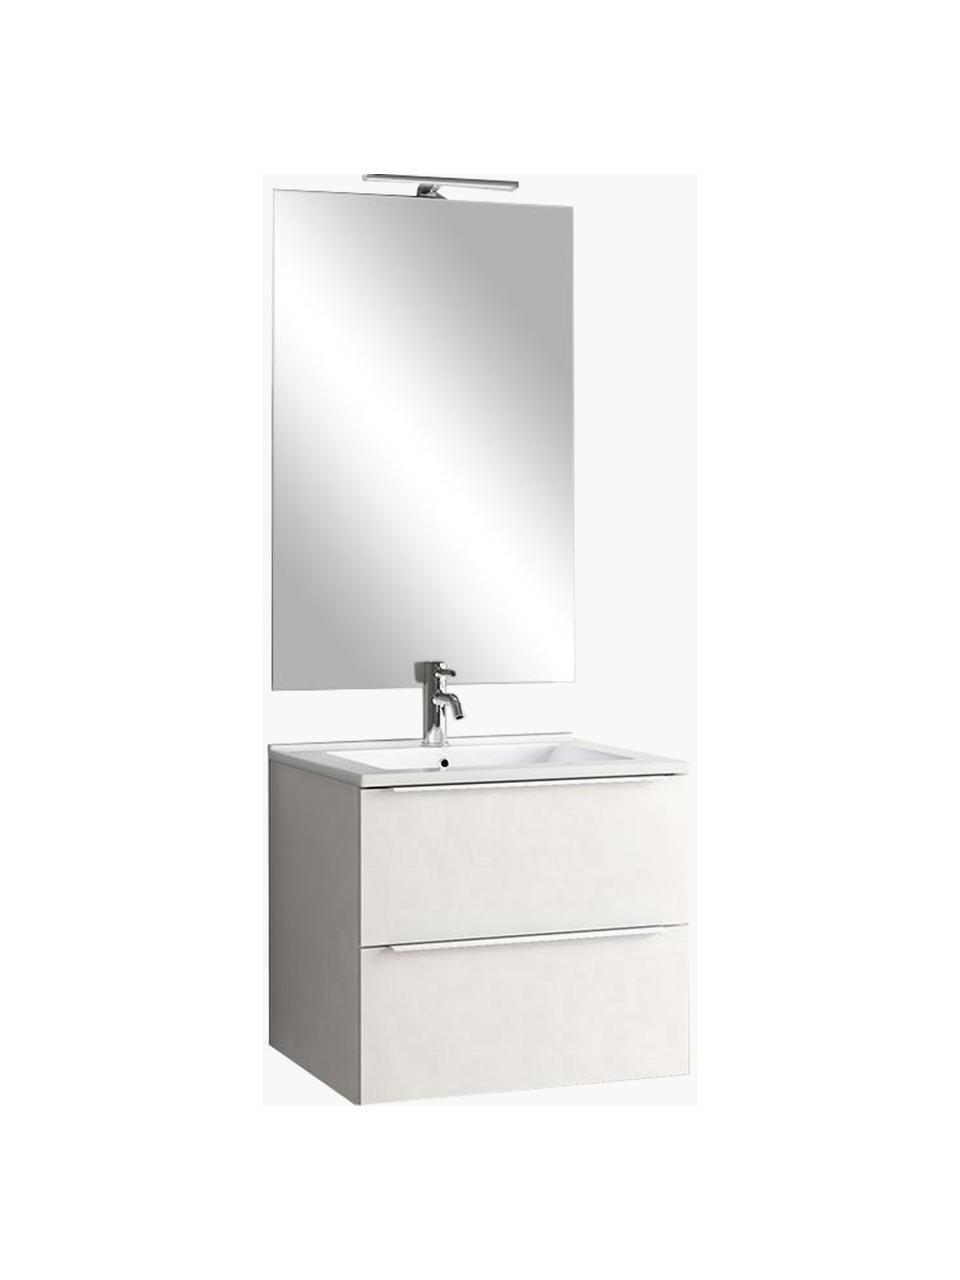 Waschtisch-Set Malmo, 4-tlg., Griffe: Aluminium, beschichtet, Spiegelfläche: Spiegelglas, Rückseite: ABS-Kunststoff, Weiss, Set mit verschiedenen Grössen